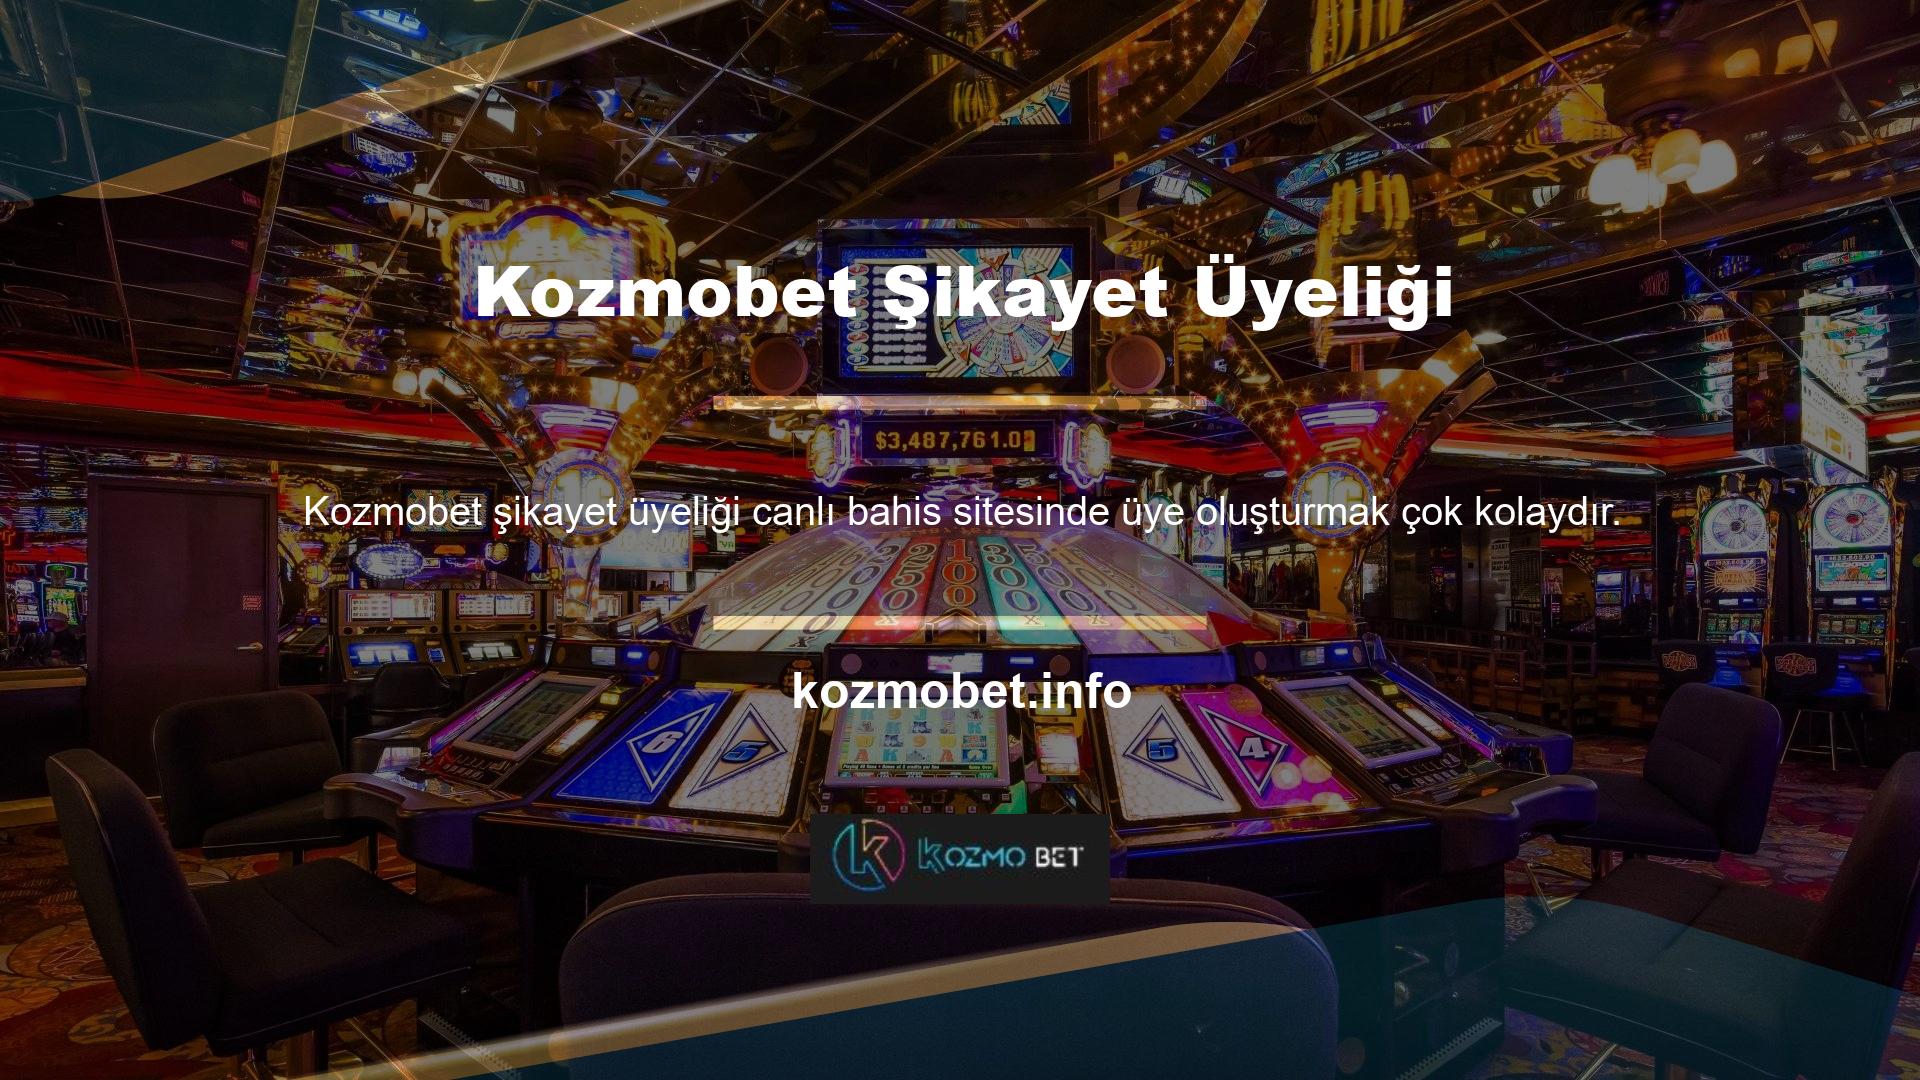 Kullanışlı ve basit bir arayüz ile tanımlanan yasadışı casino sitesi, öncelikle ana sayfayı ziyaret etmelidir